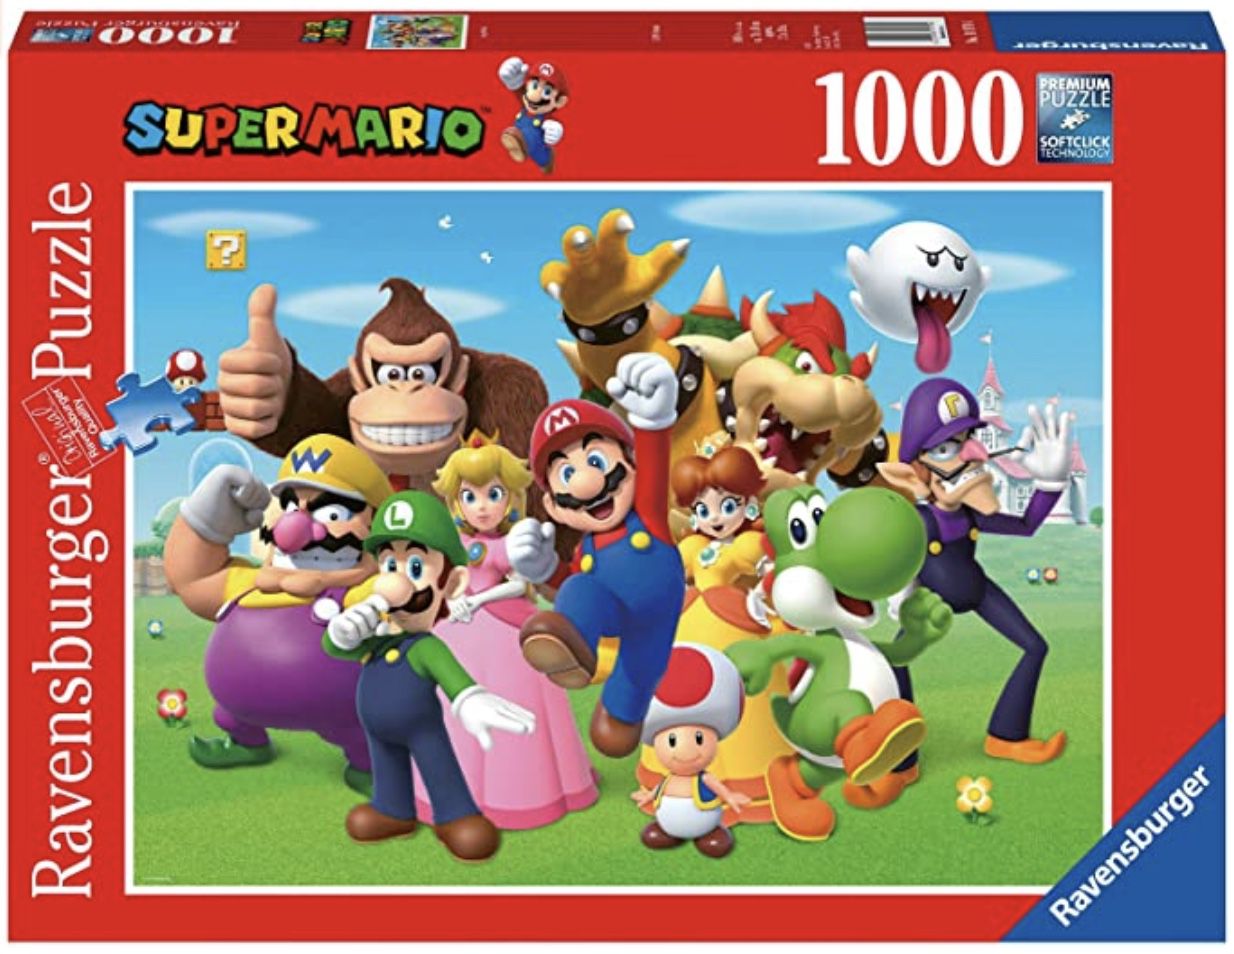 Ravensburger Super Mario 1.000 Teile Puzzle für 7,54€ (statt 14€)